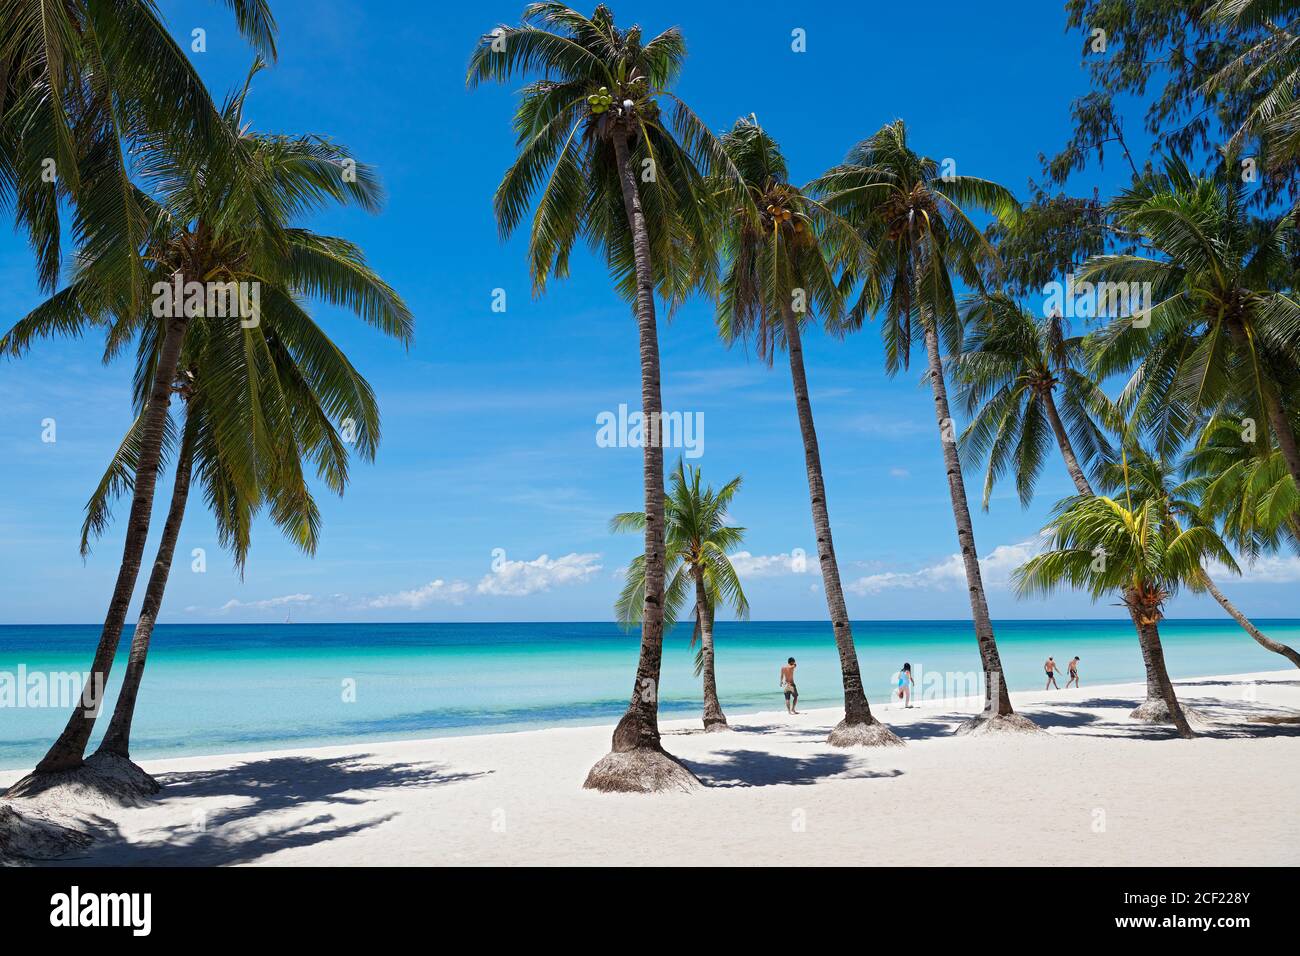 Un groupe de personnes marchant à côté des cocotiers le long de la plage blanche propre de l'île Boracay, Aklan, Visayas, Philippines, à une journée ensoleillée. Banque D'Images